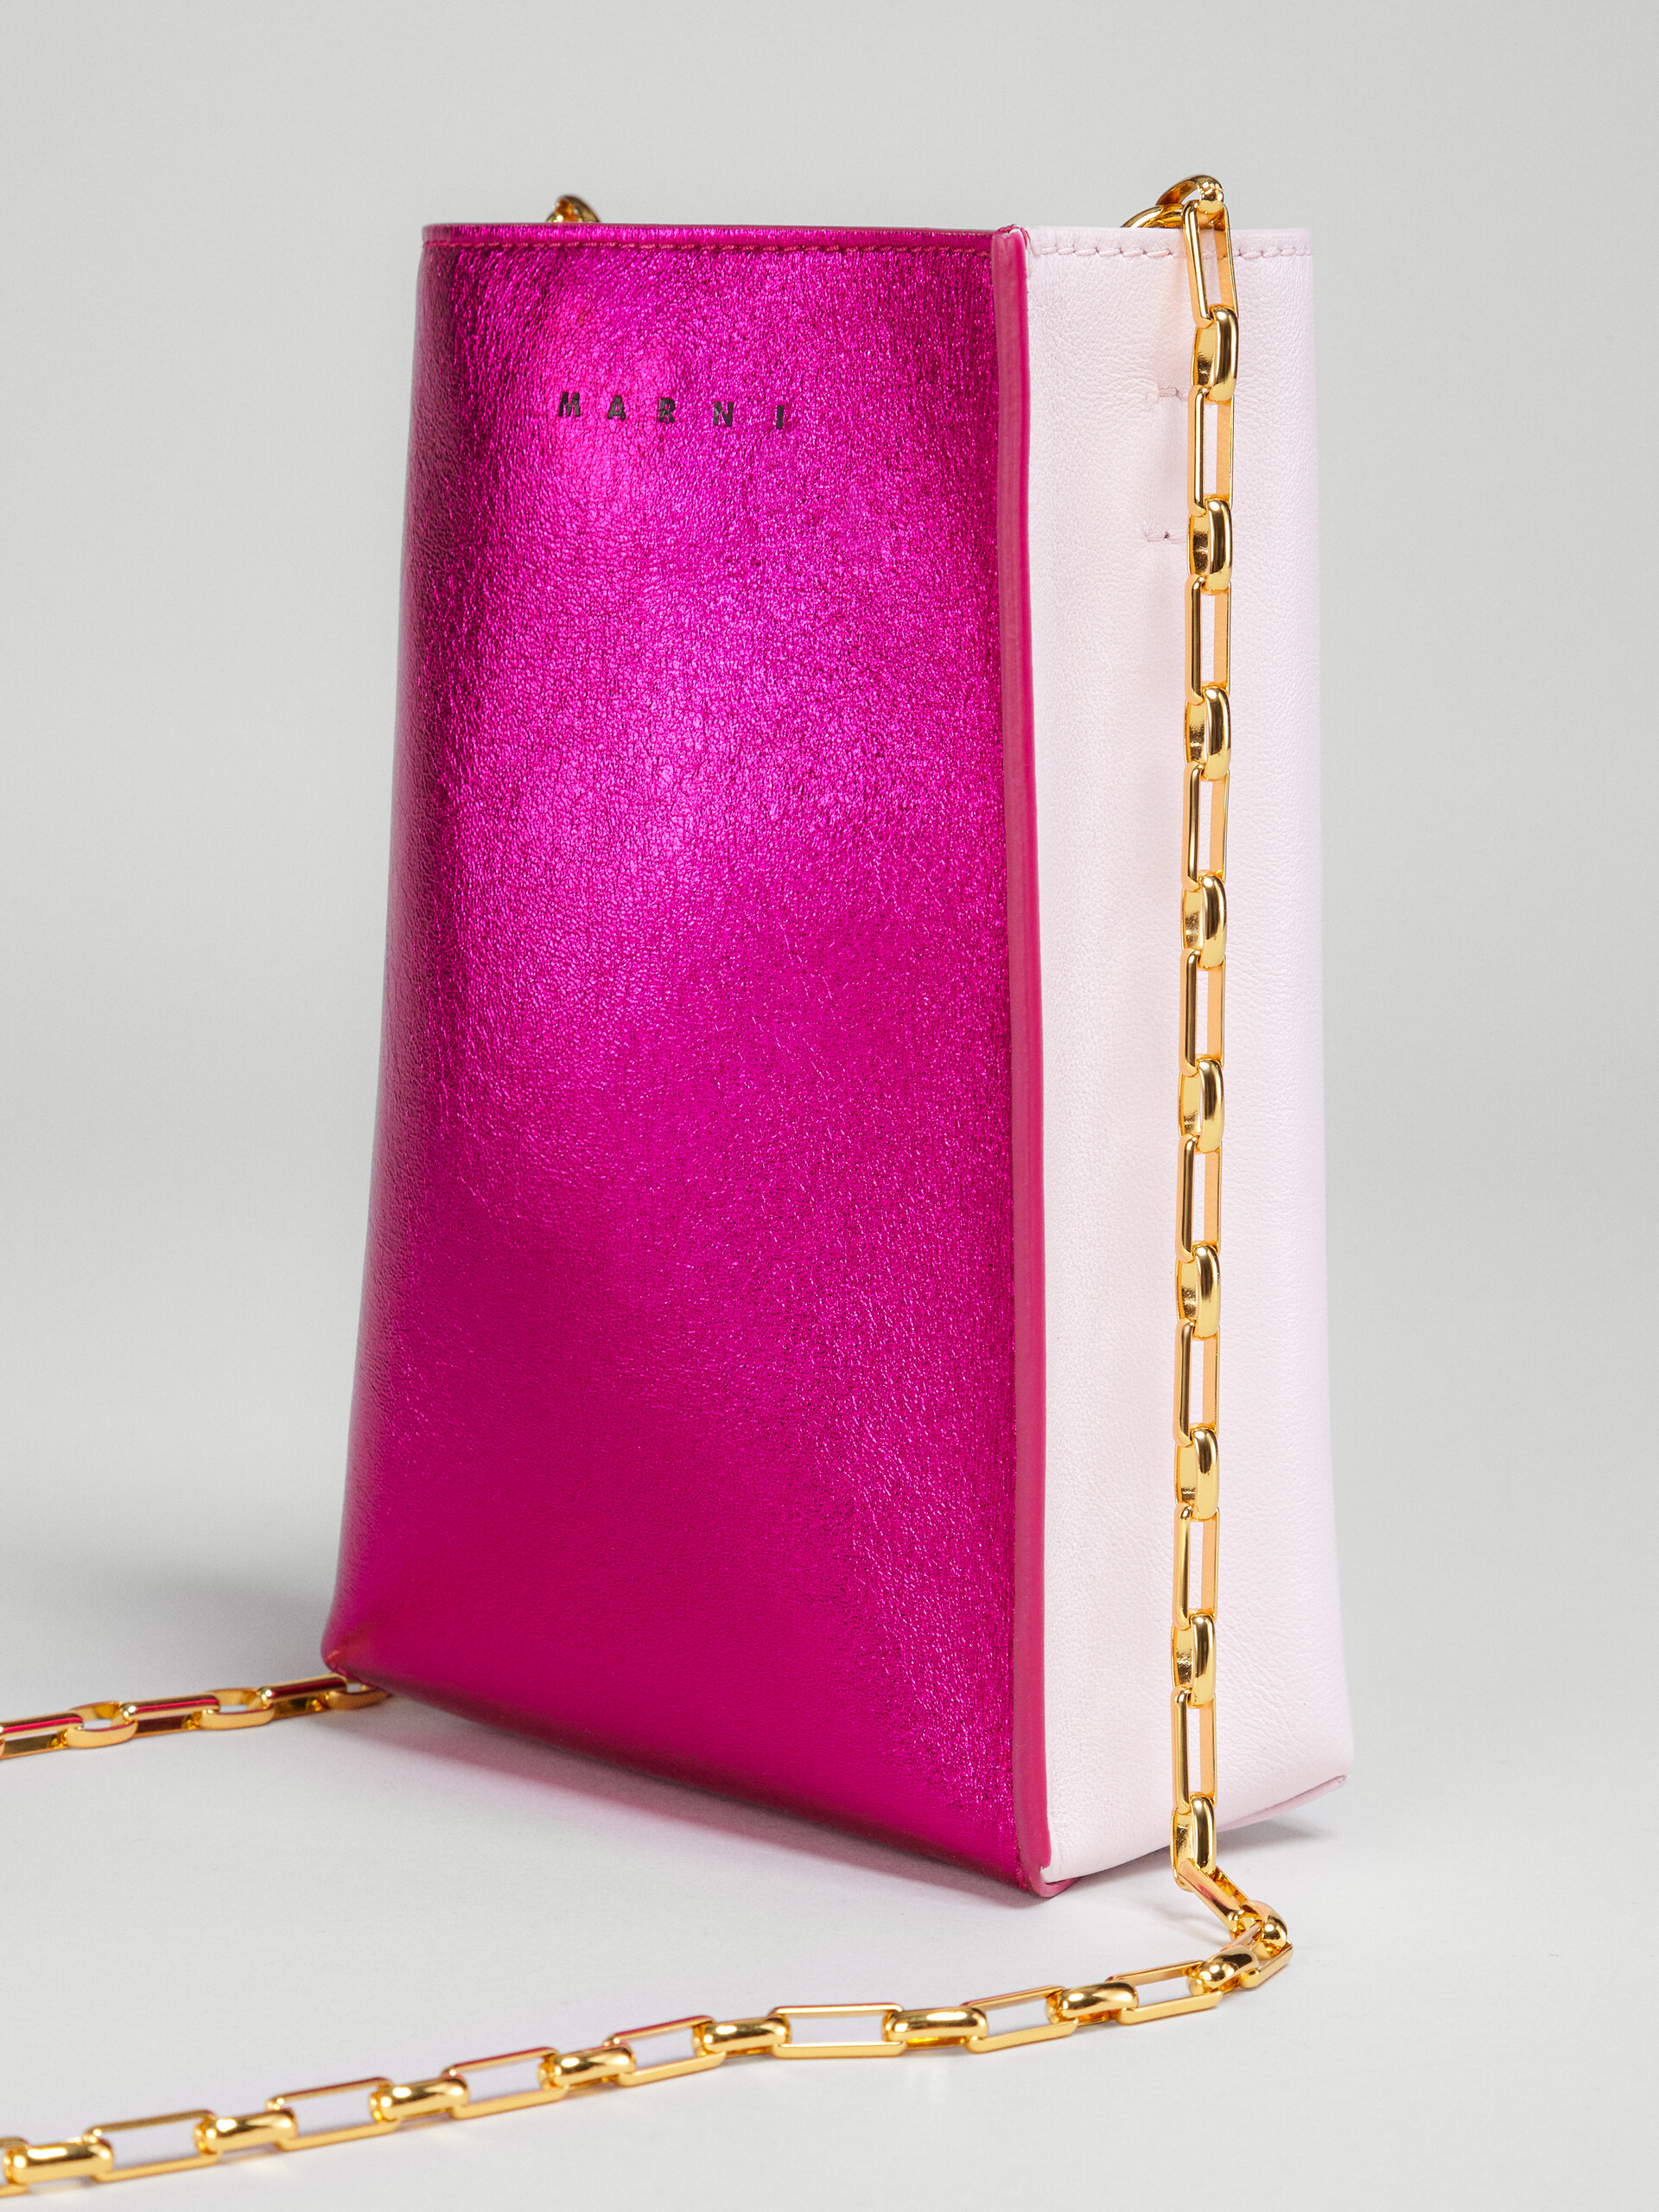 Sac MUSEO SOFT en cuir métallisé fuchsia et rose - Sacs portés épaule - Image 3